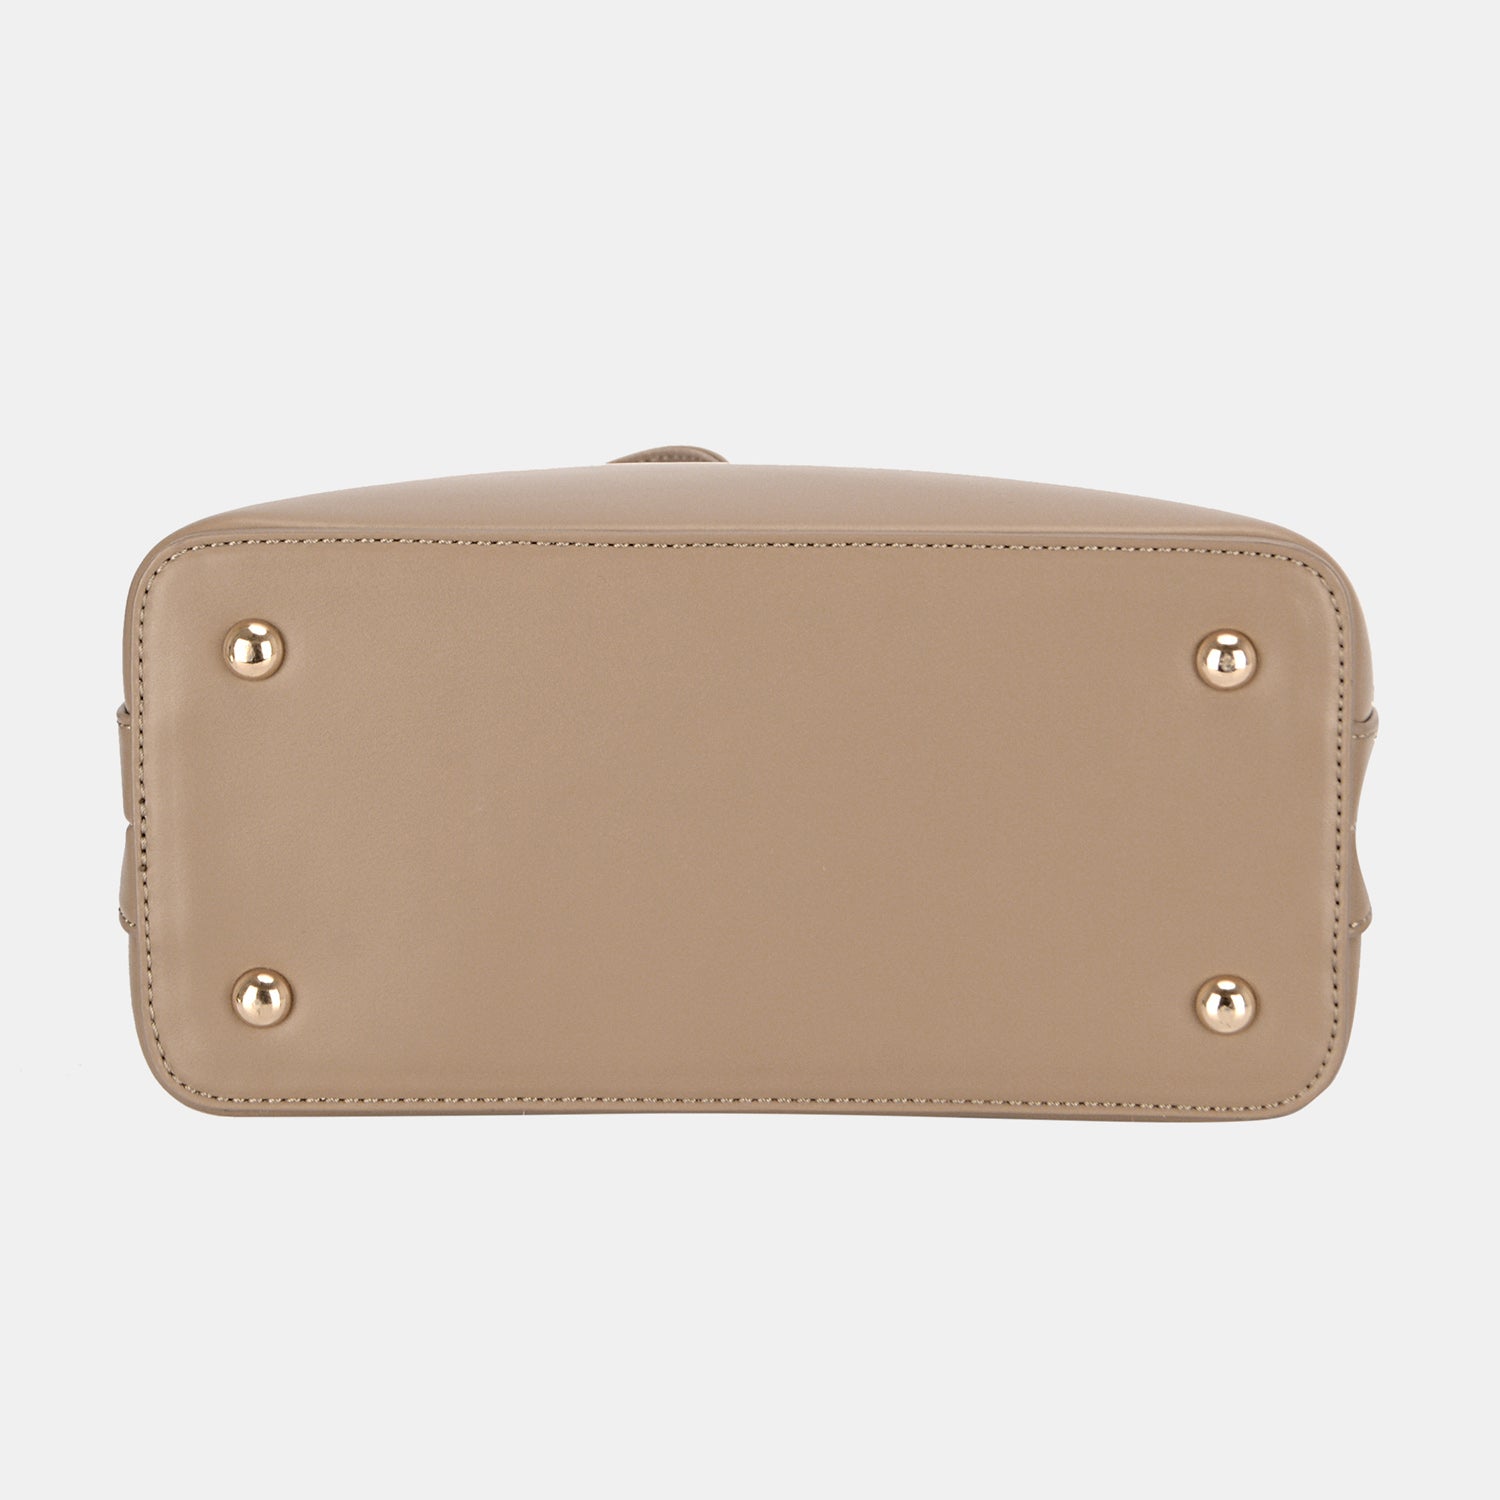 David Jones PU Leather Adjustable Straps Backpack Bag Trendsi